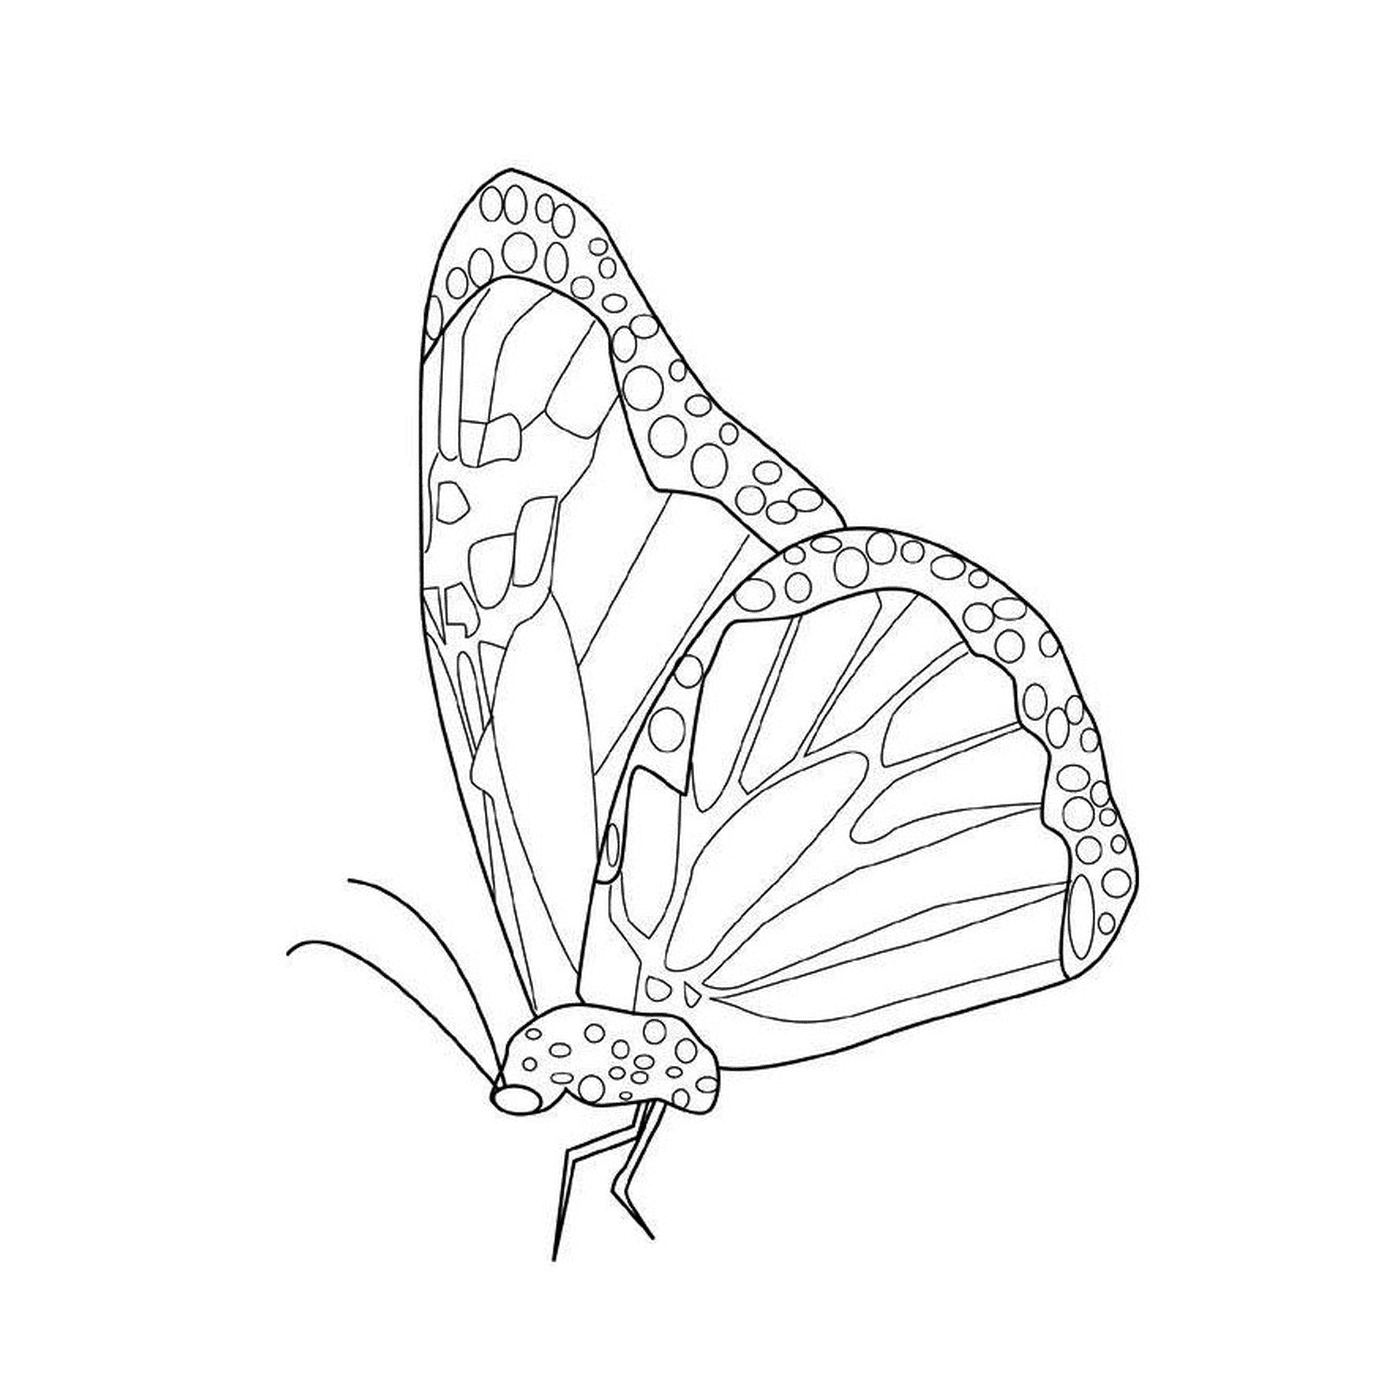  Mariposa Monarca con Patrones Únicos 